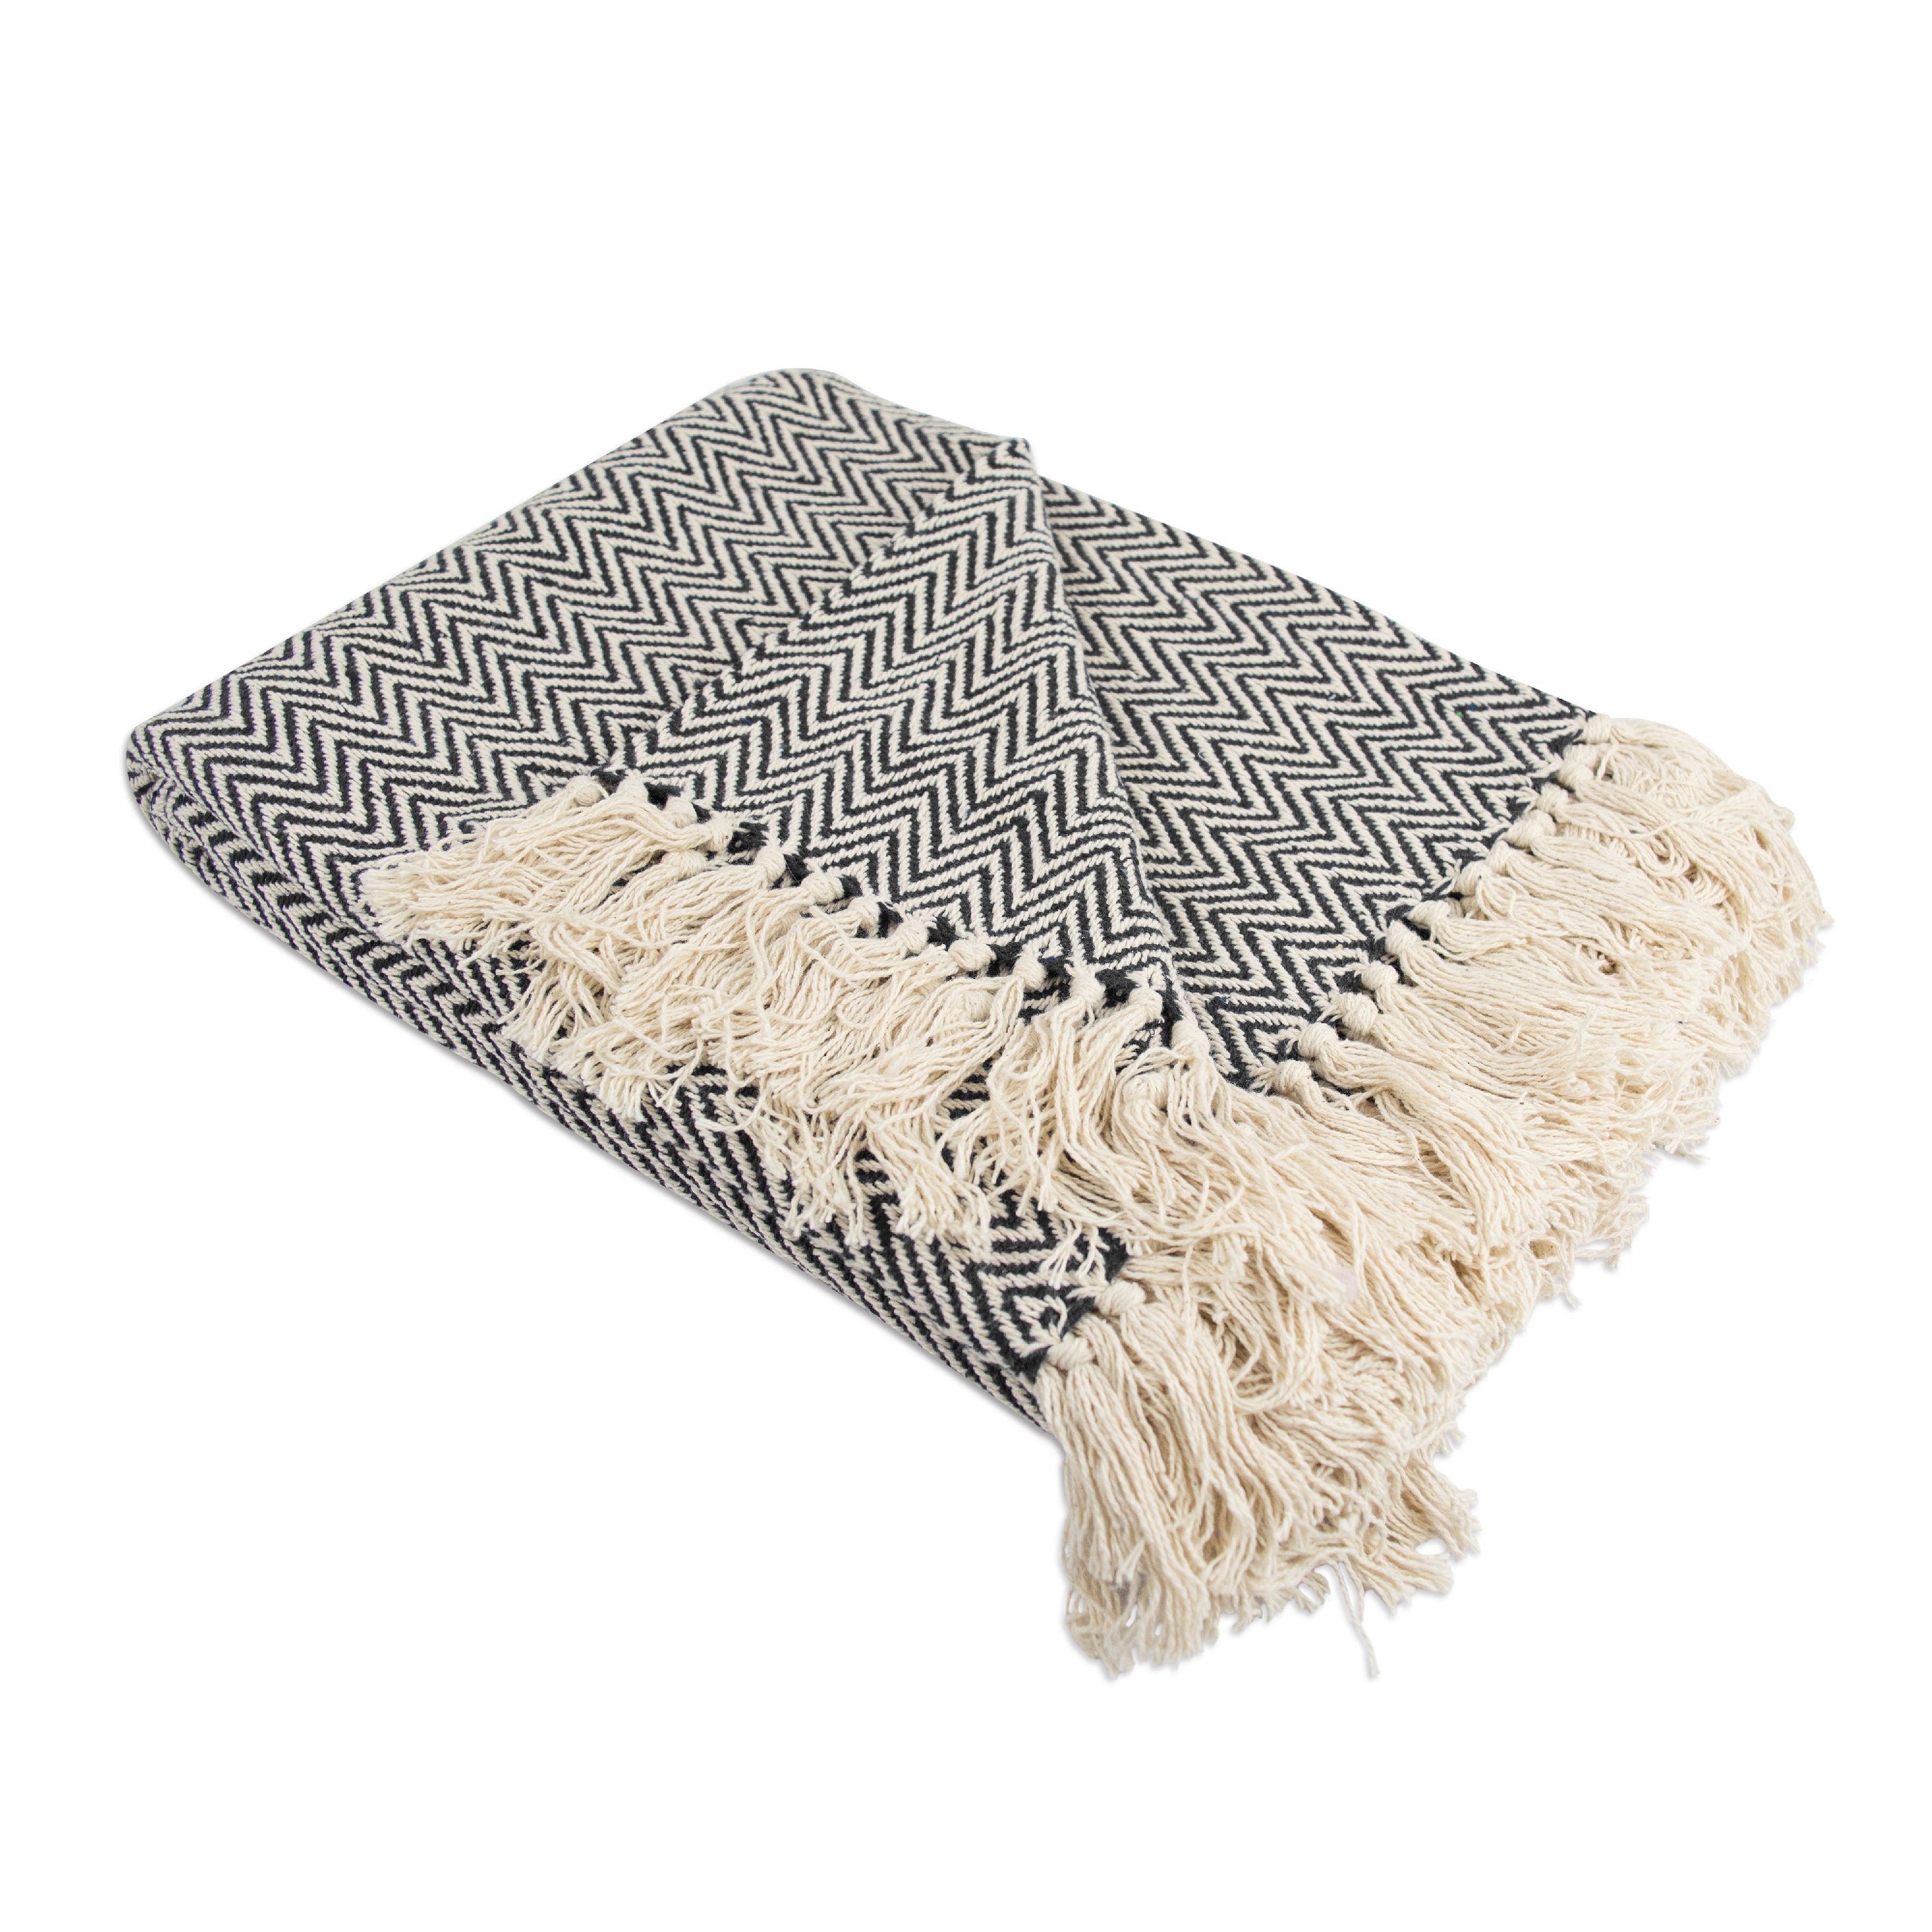 Flato Handloomed 100% Cotton Throw Sofa Blanket Indian Sand 50"x60" 